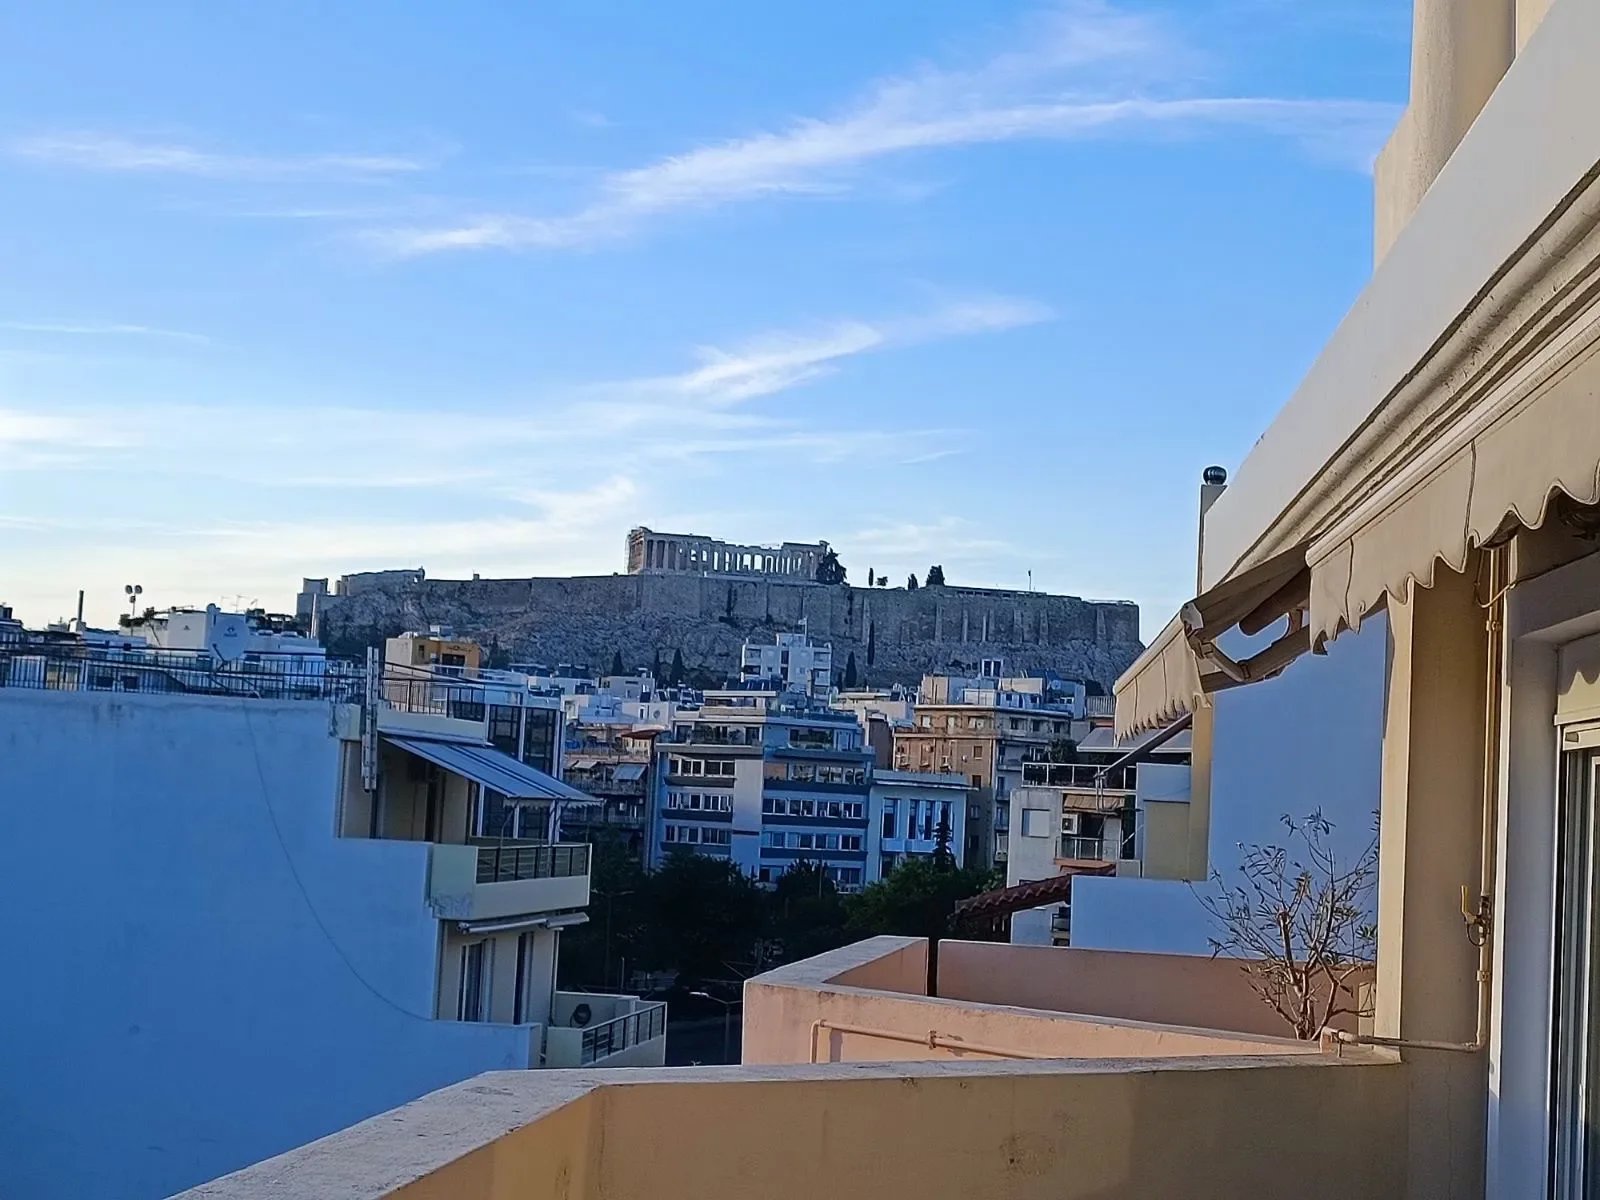 Διαμέρισμα προς ενοικίαση 135τ.μ στην Αθήνα με θέα Ακρόπολη!